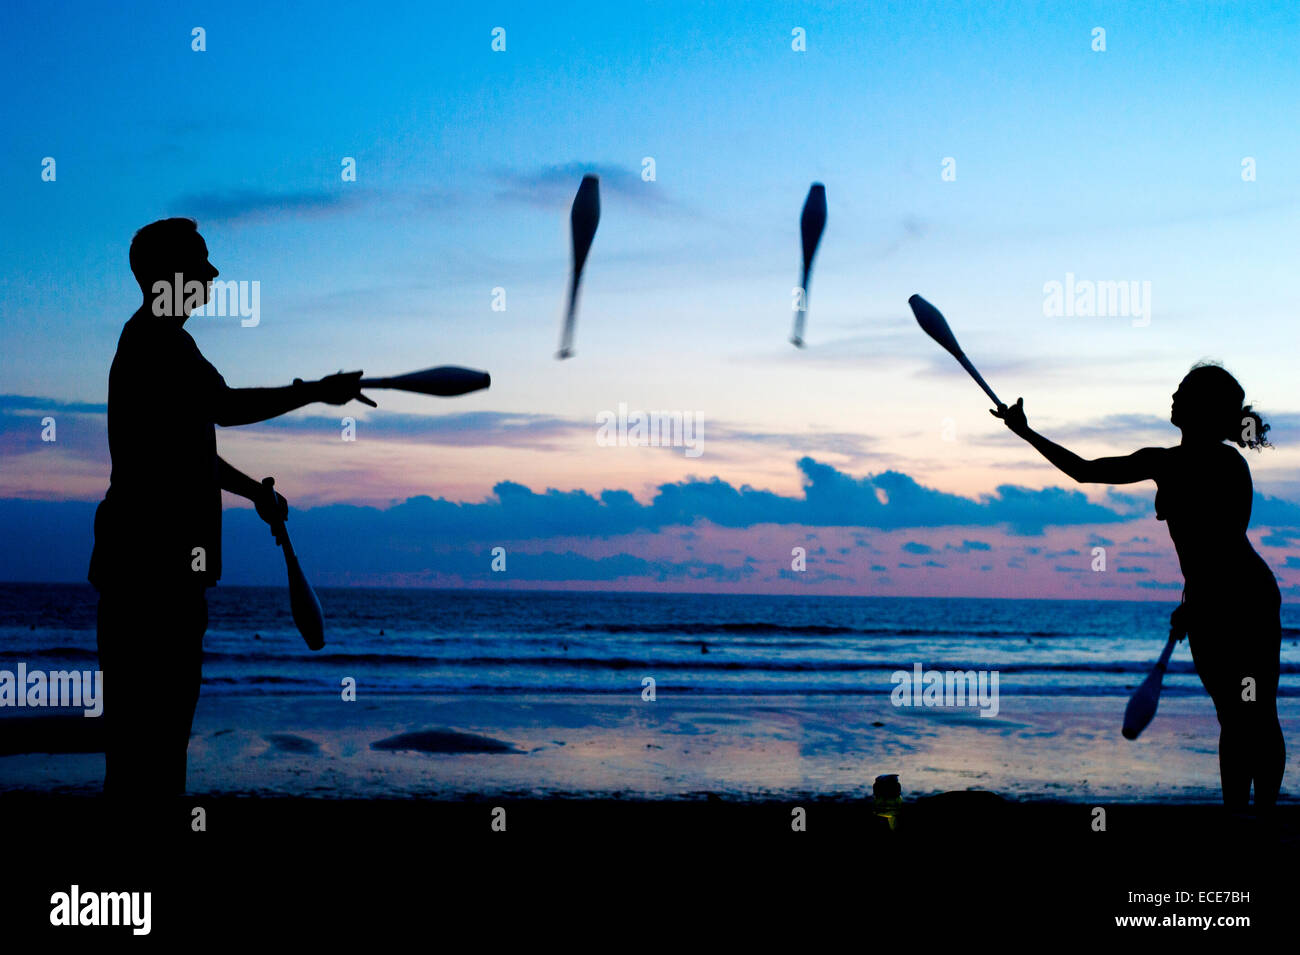 L'homme et la femme juggling sur l'océan plage au coucher du soleil. Bali, Indonésie Banque D'Images